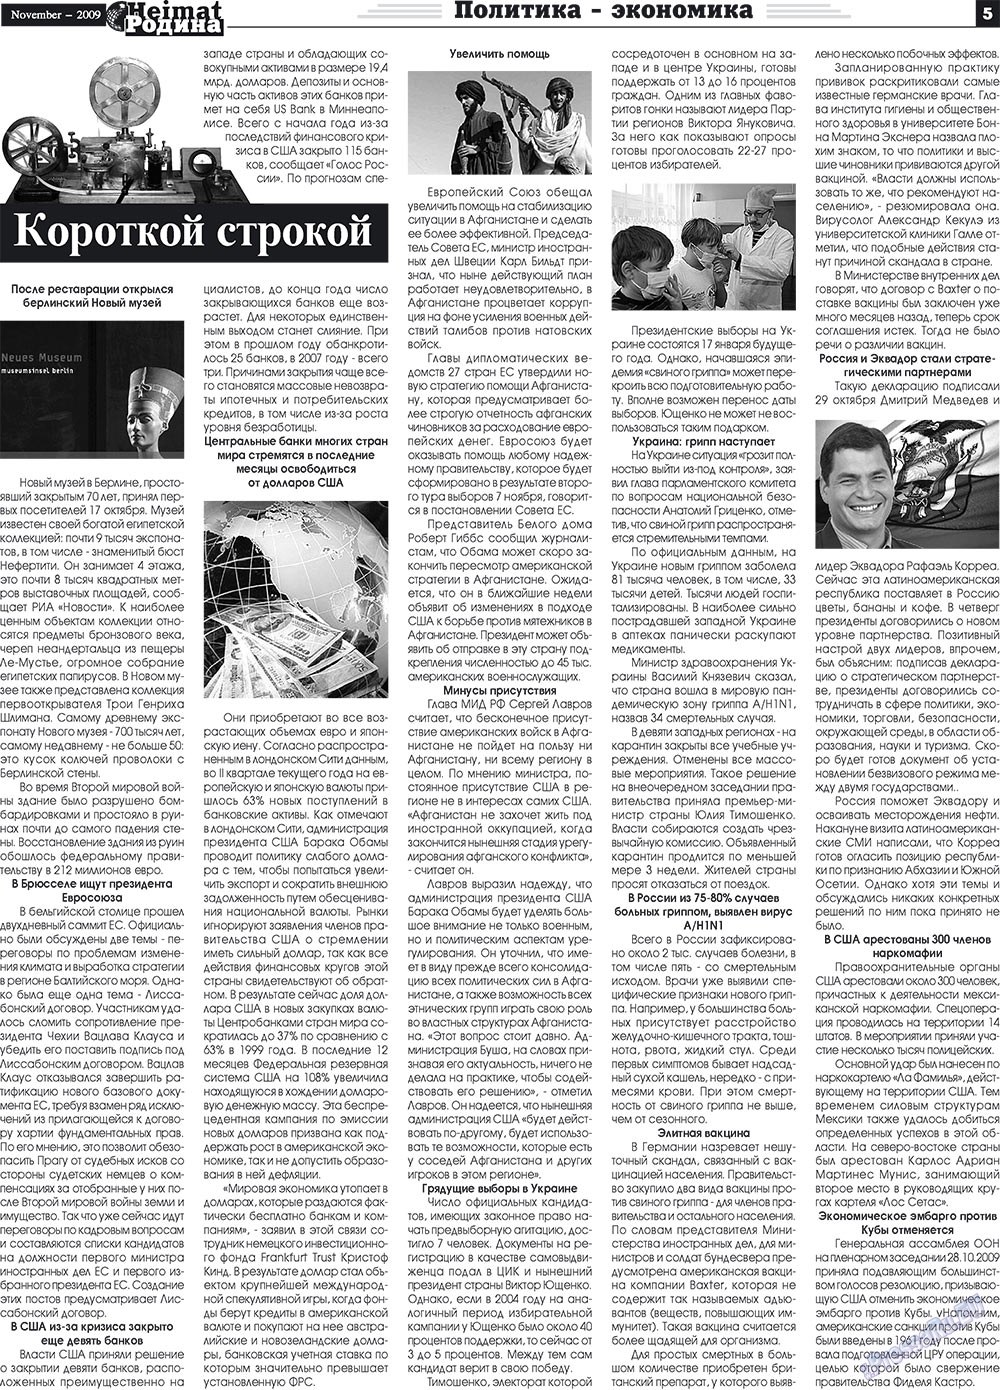 Heimat-Родина (газета). 2009 год, номер 11, стр. 5